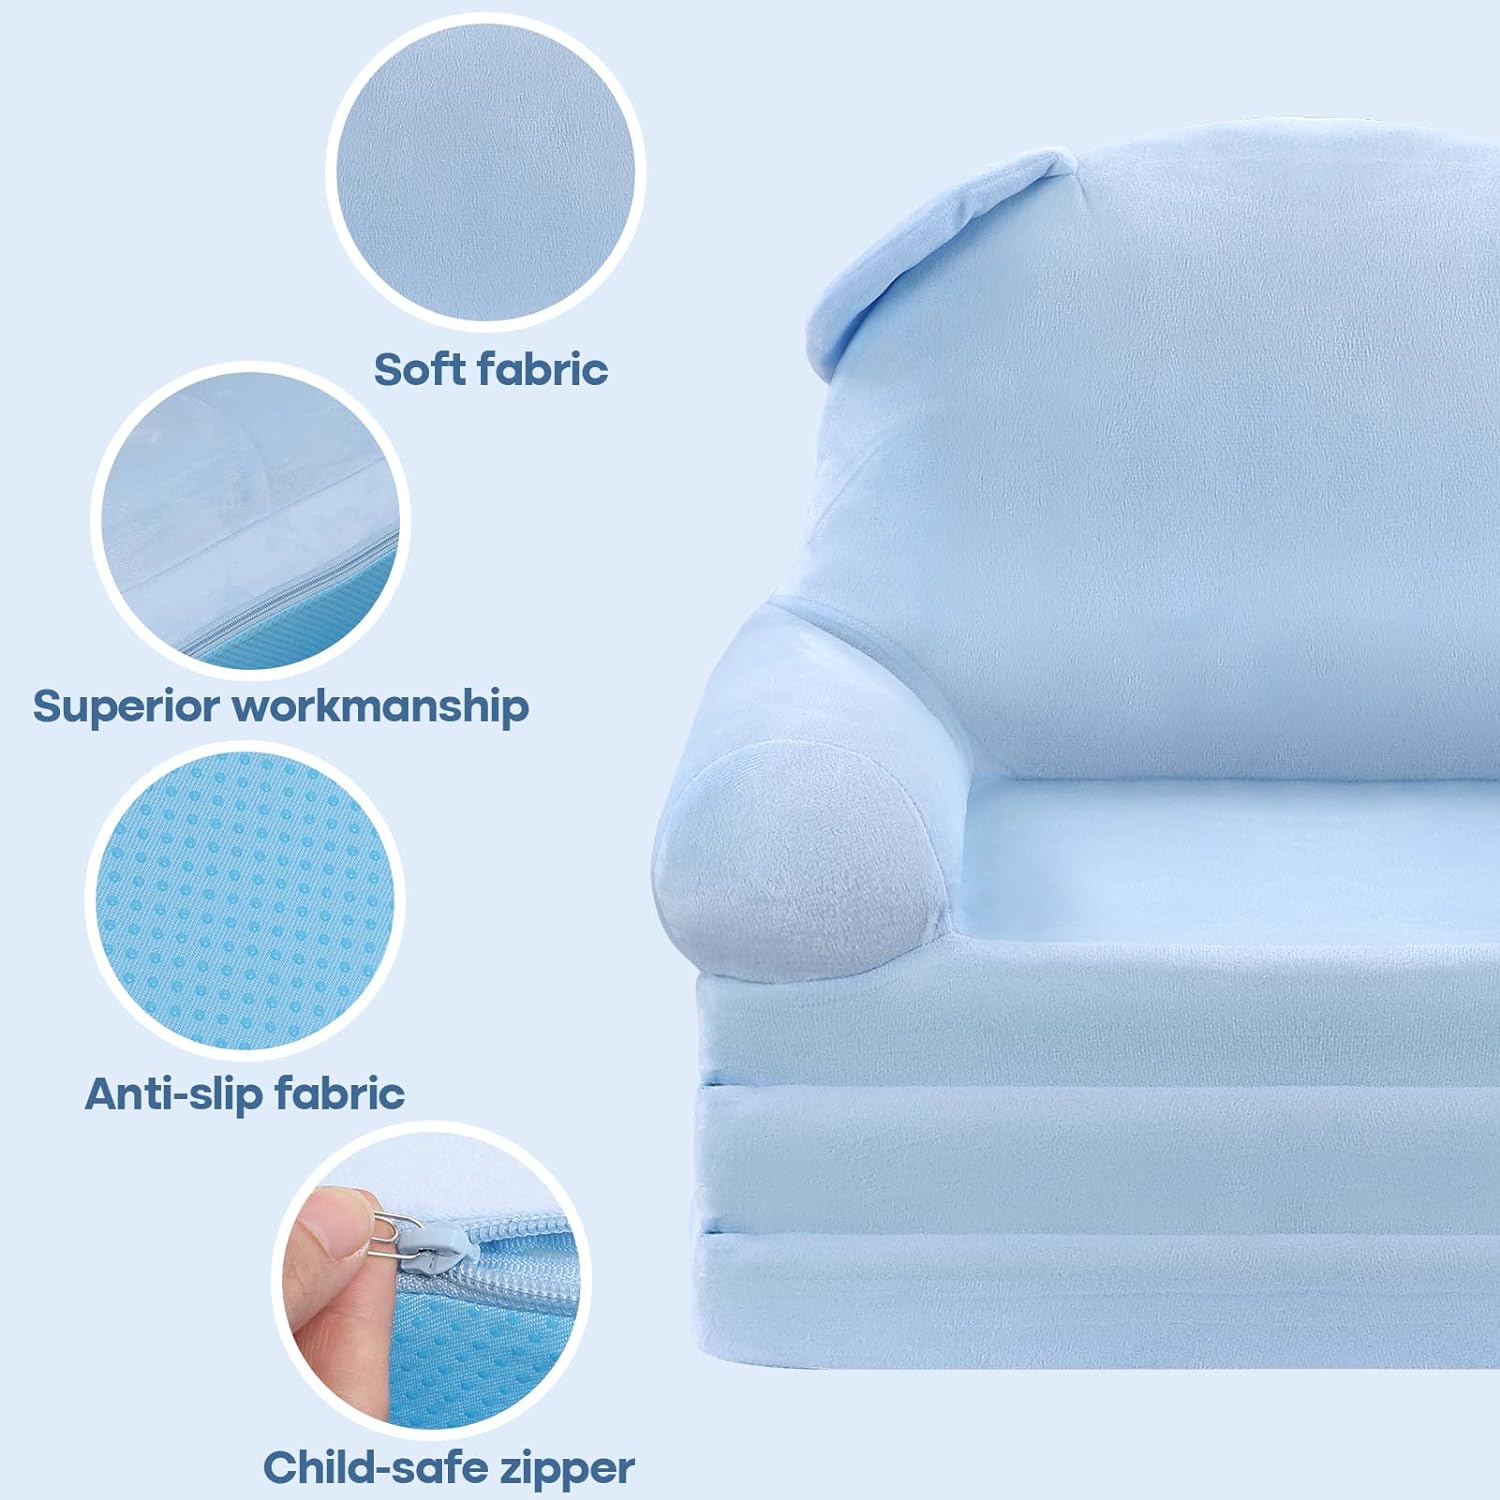 Sofá infantil con función plegable, sofá para niños elige telas de felpa corta